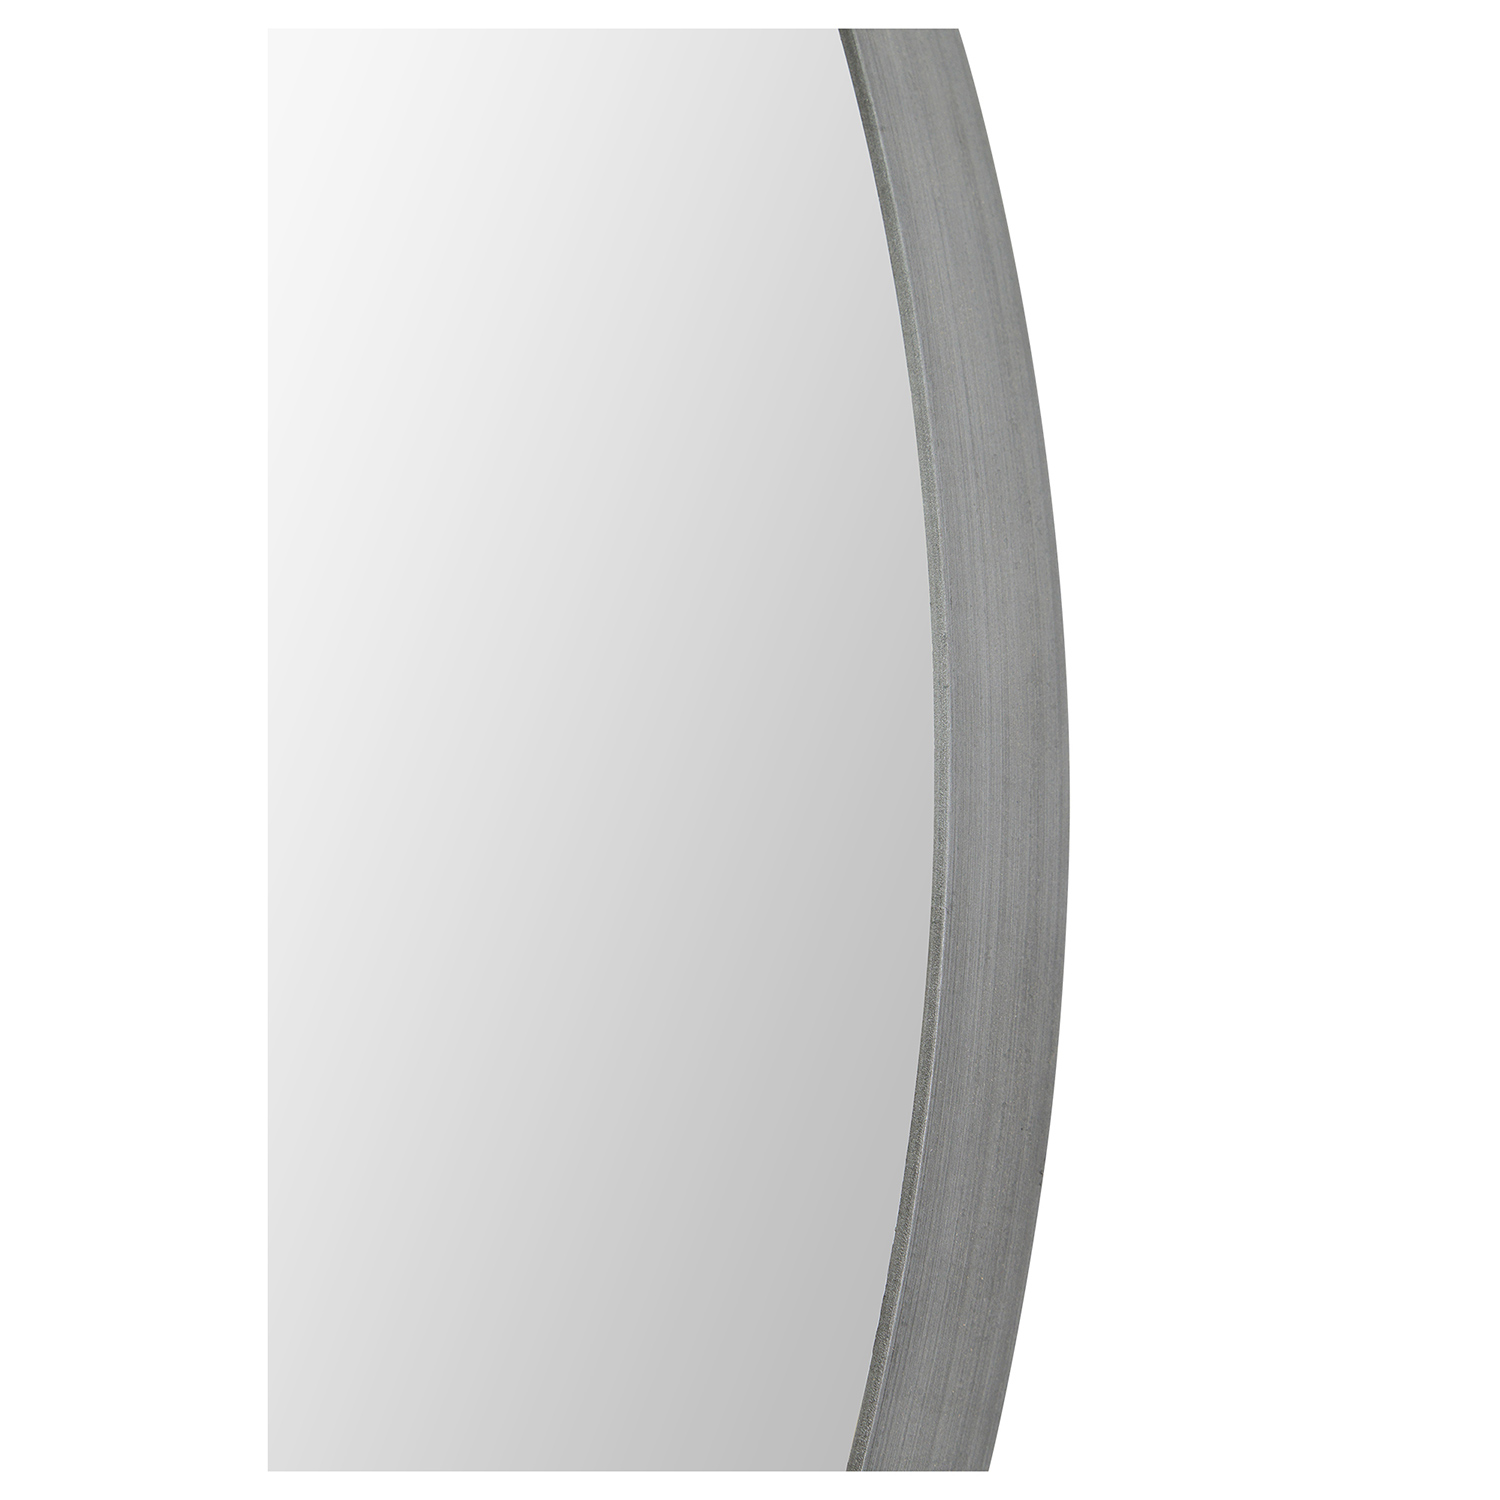 Ren-Wil Lester Round Mirror - Silver Brush